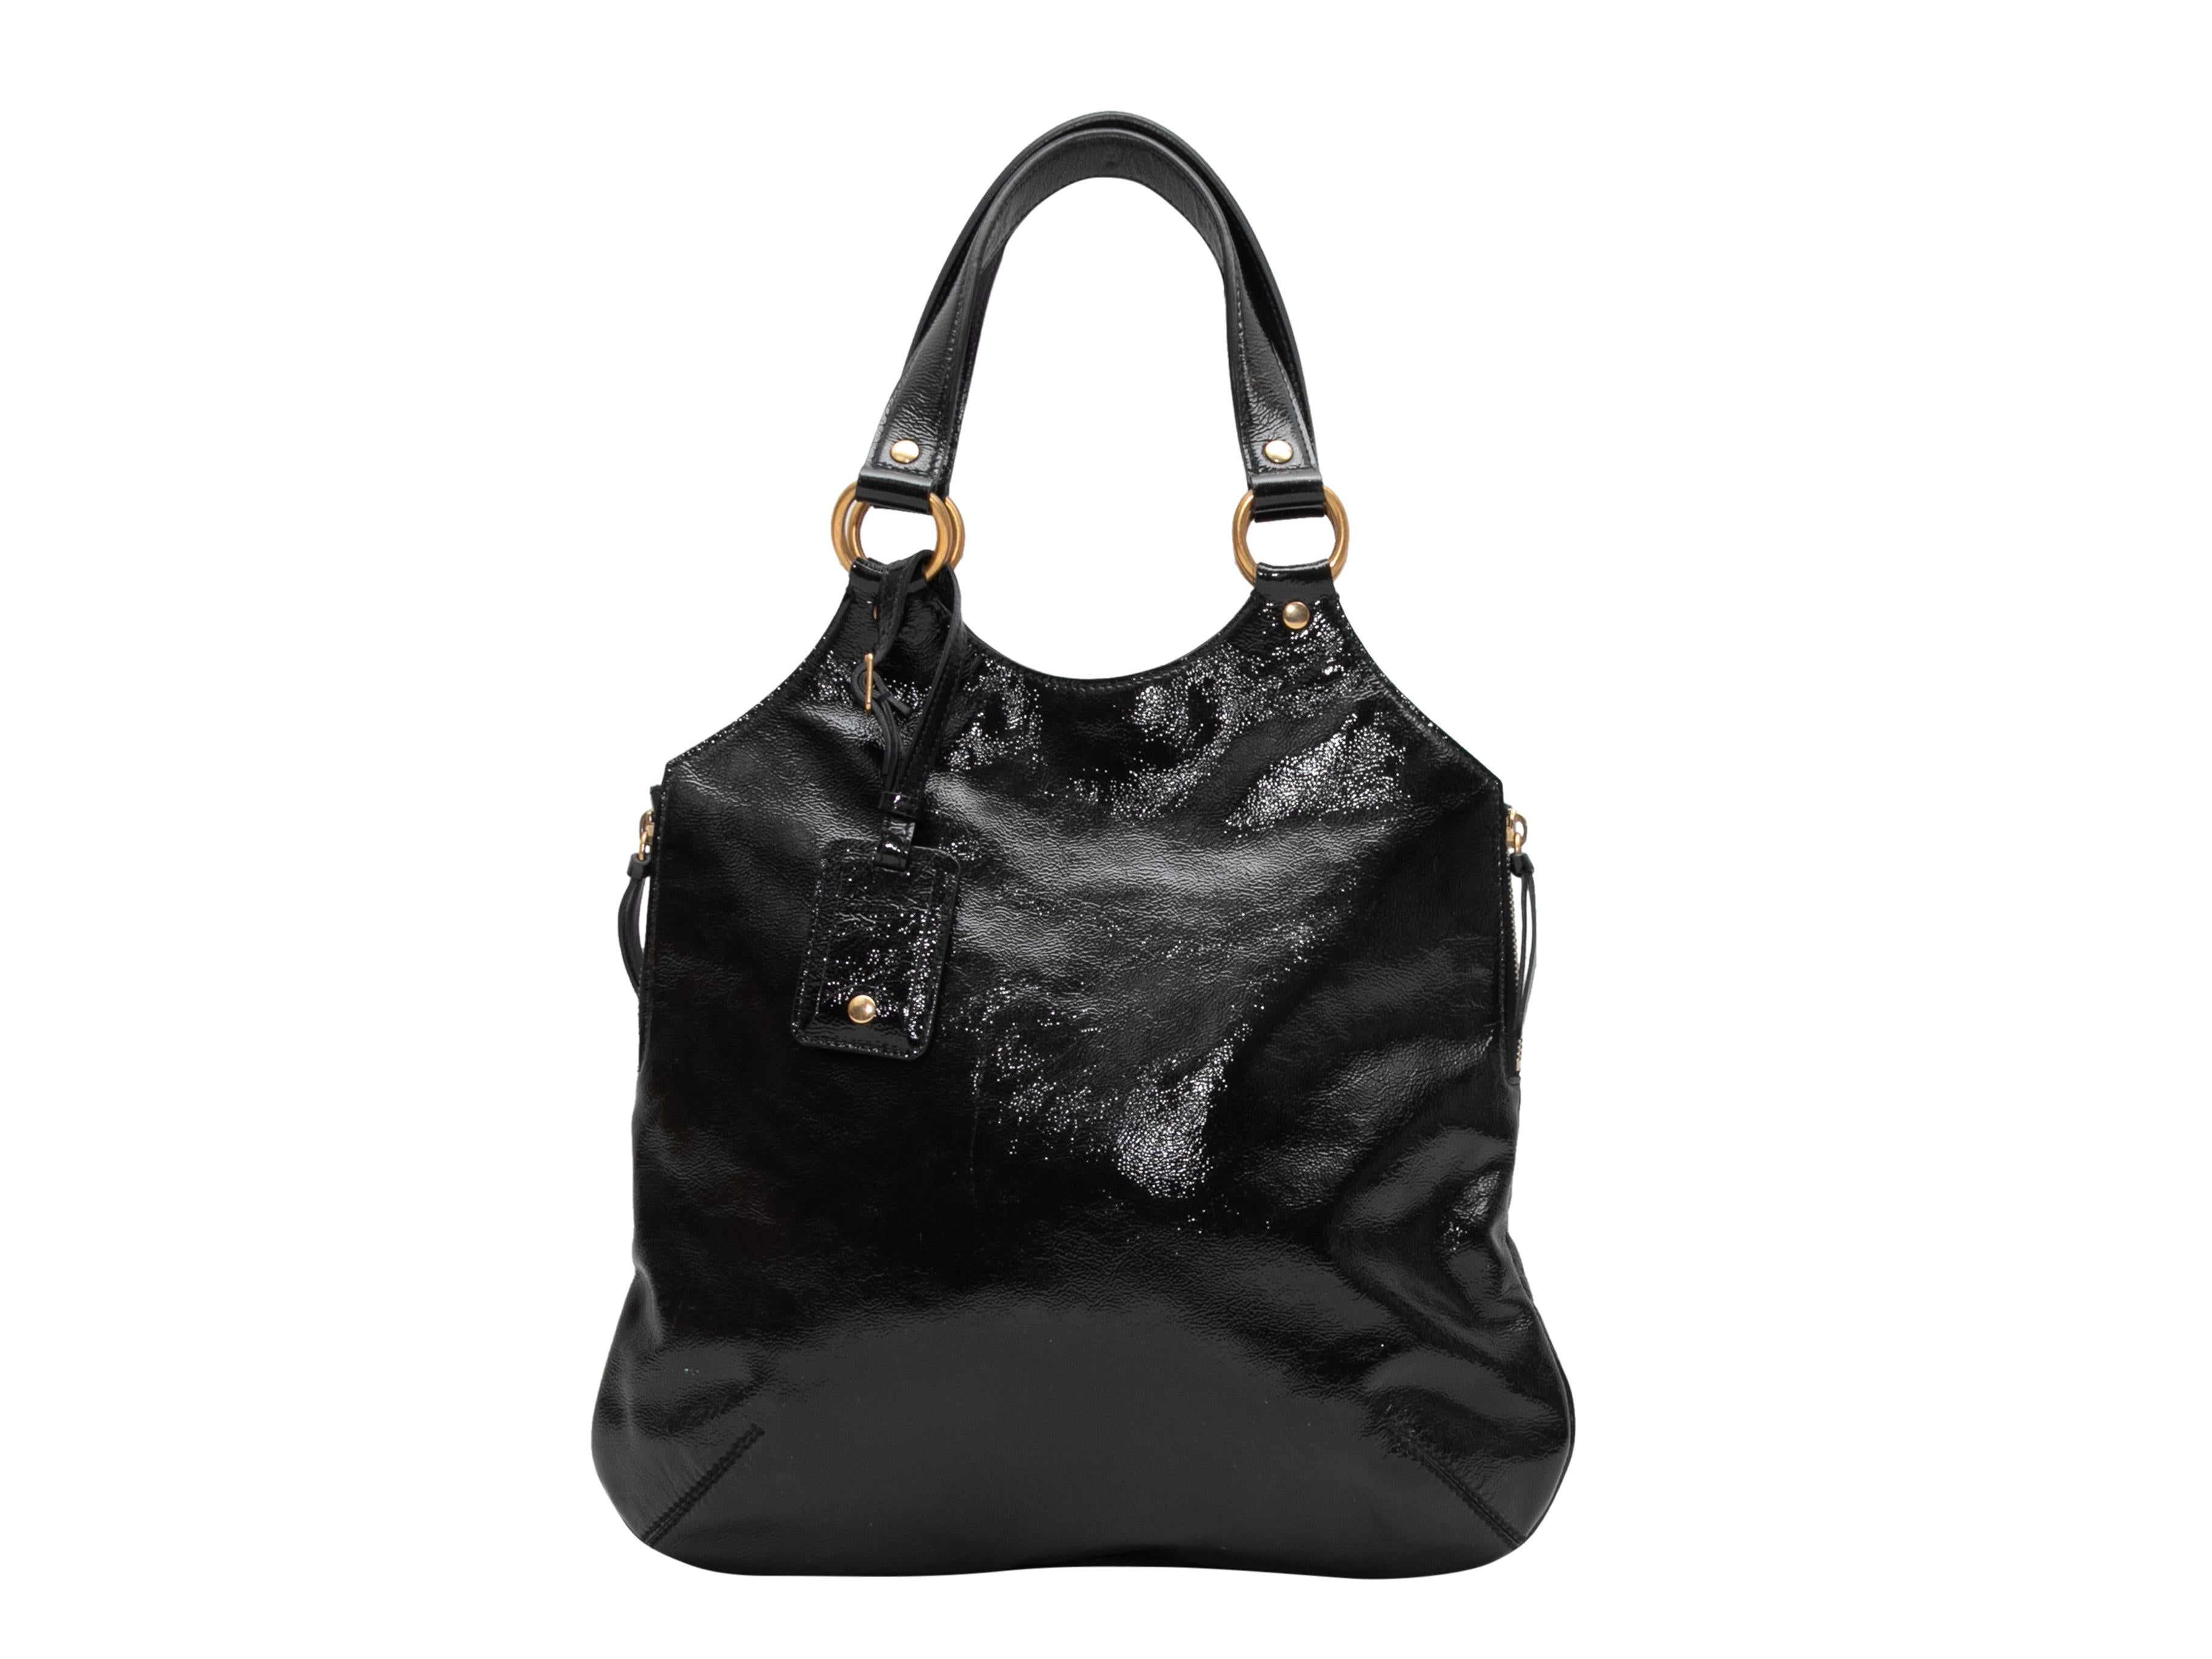 Schwarze Yves Saint Laurent Handtasche aus Lackleder. Diese Handtasche hat ein Gehäuse aus Lackleder, goldfarbene Beschläge, zwei Griffe an der Oberseite, Reißverschlüsse an den Seiten und einen Magnetverschluss an der Oberseite. 13